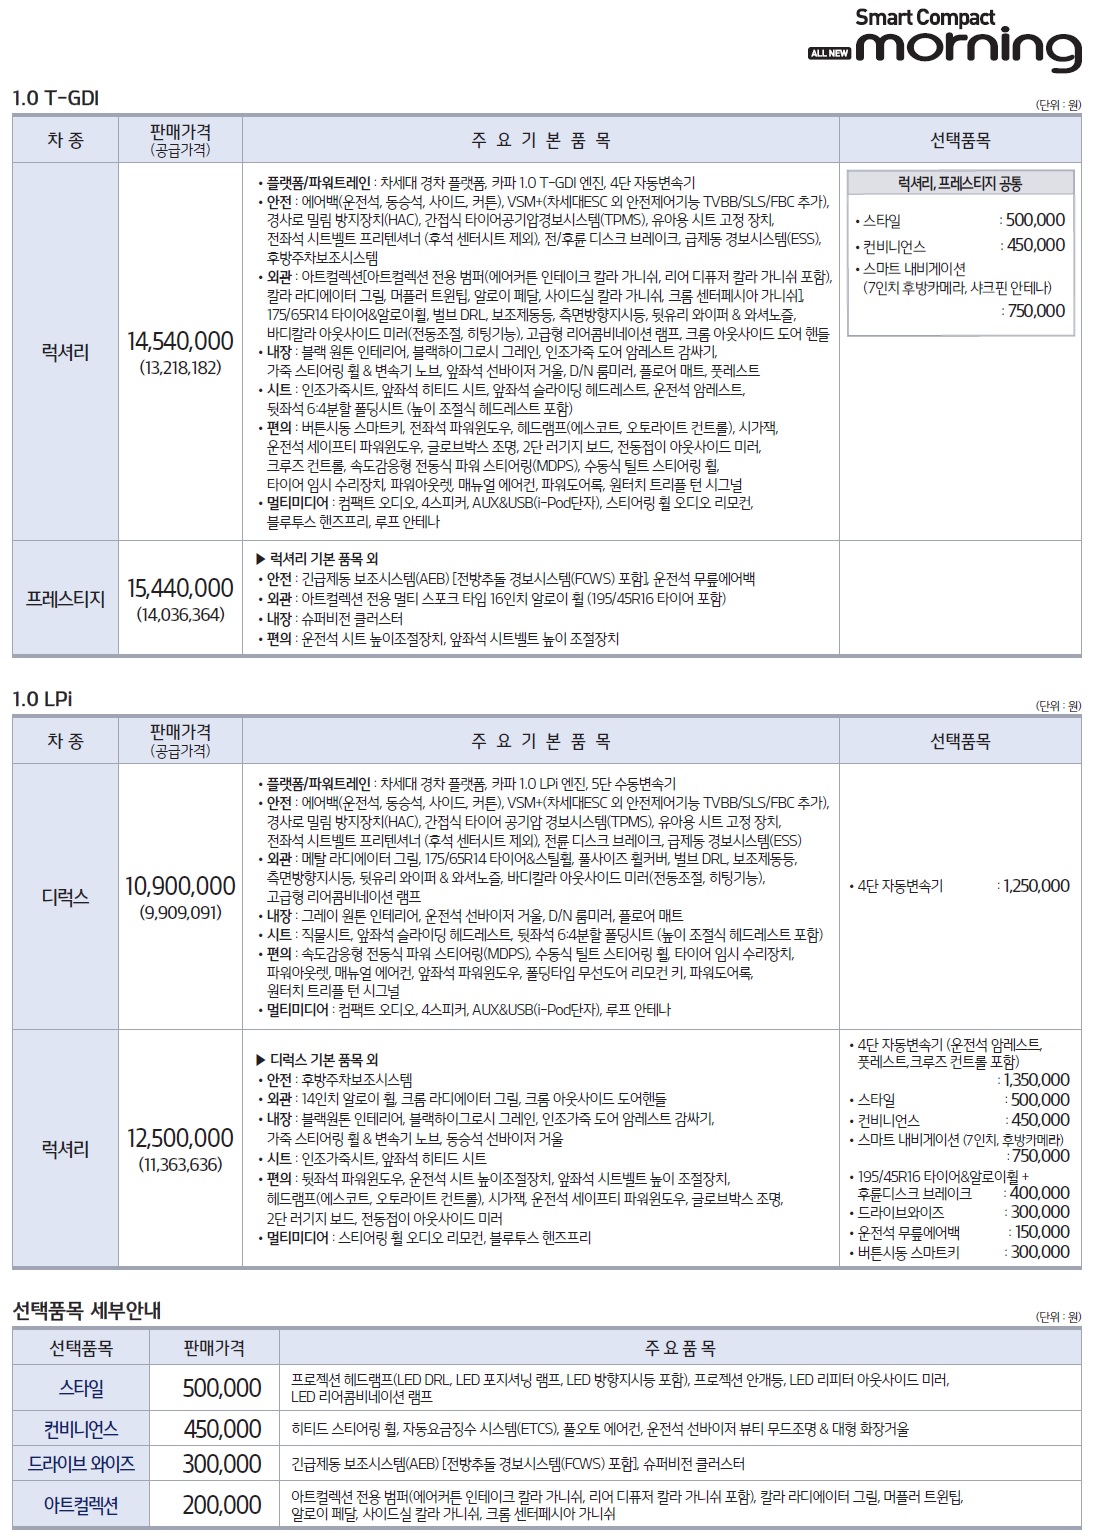 올뉴모닝 가격표 - 2017년 09월 -2.jpg